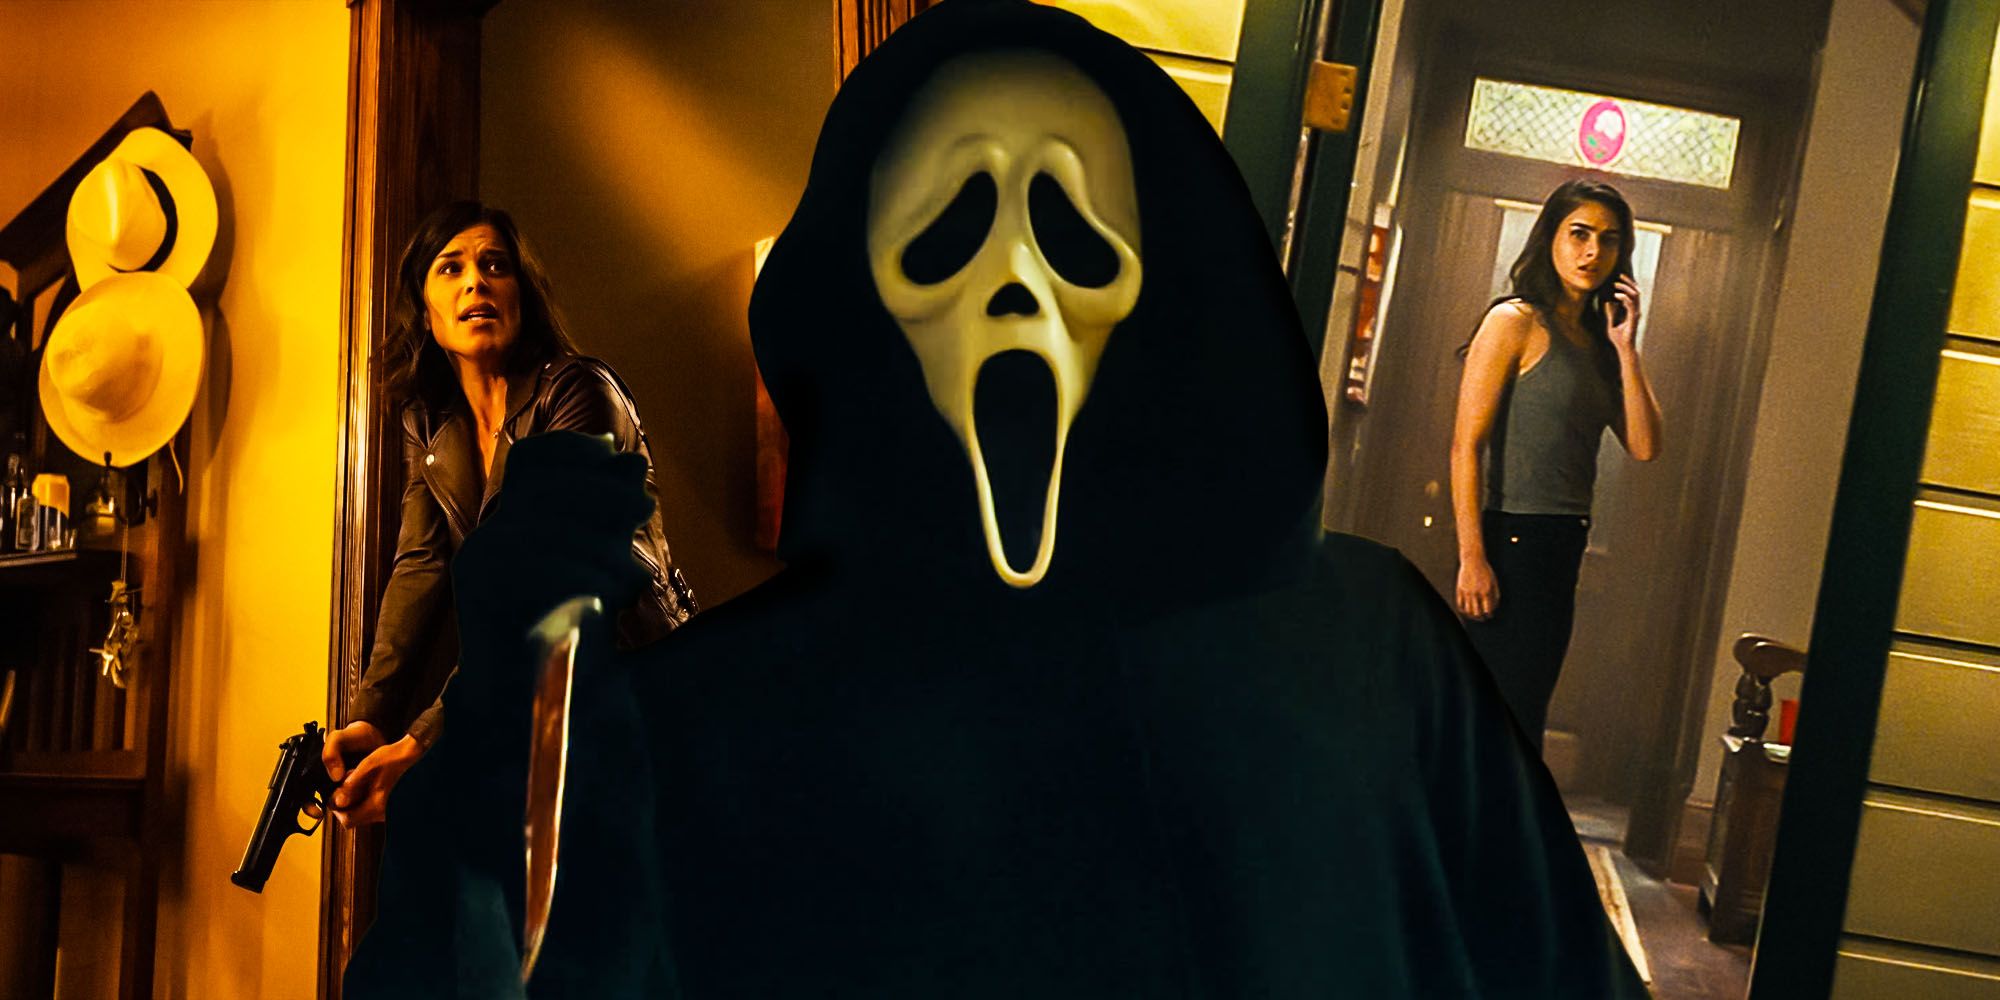 Scream 2022 Ending & Ghostface Killer Identity Explained